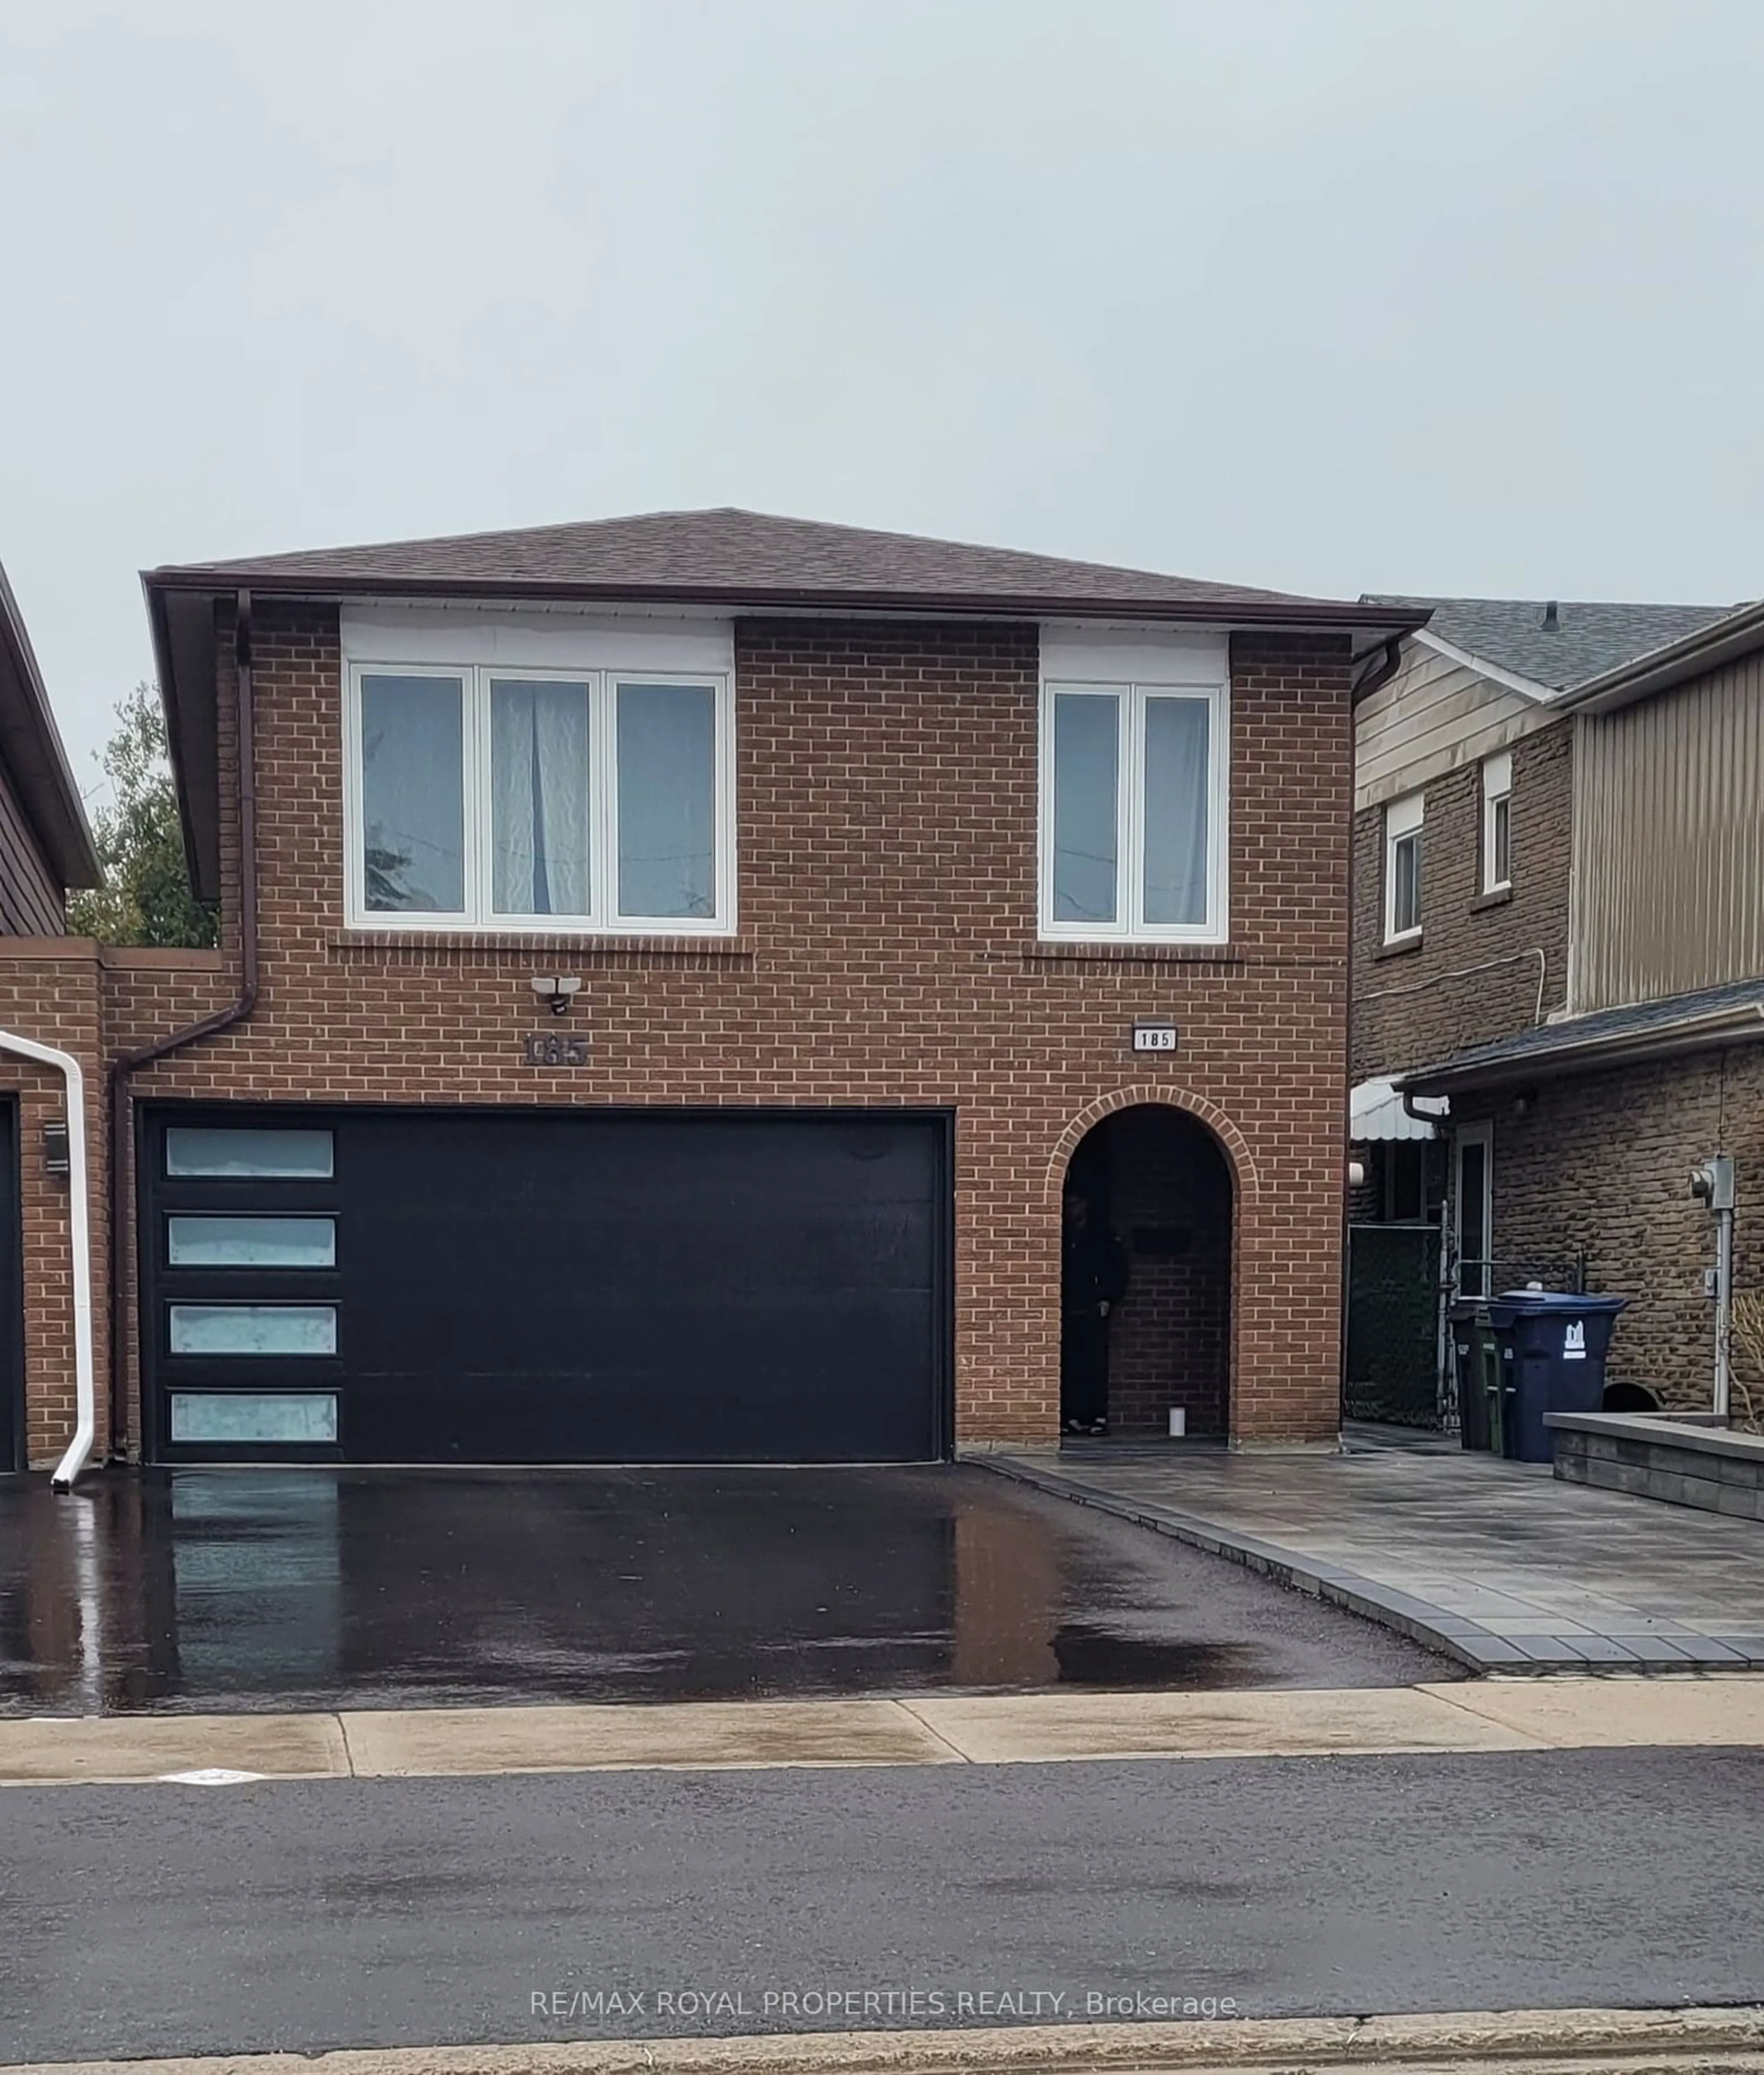 Home with brick exterior material for 185 Braymore Blvd, Toronto Ontario M1B 2E1